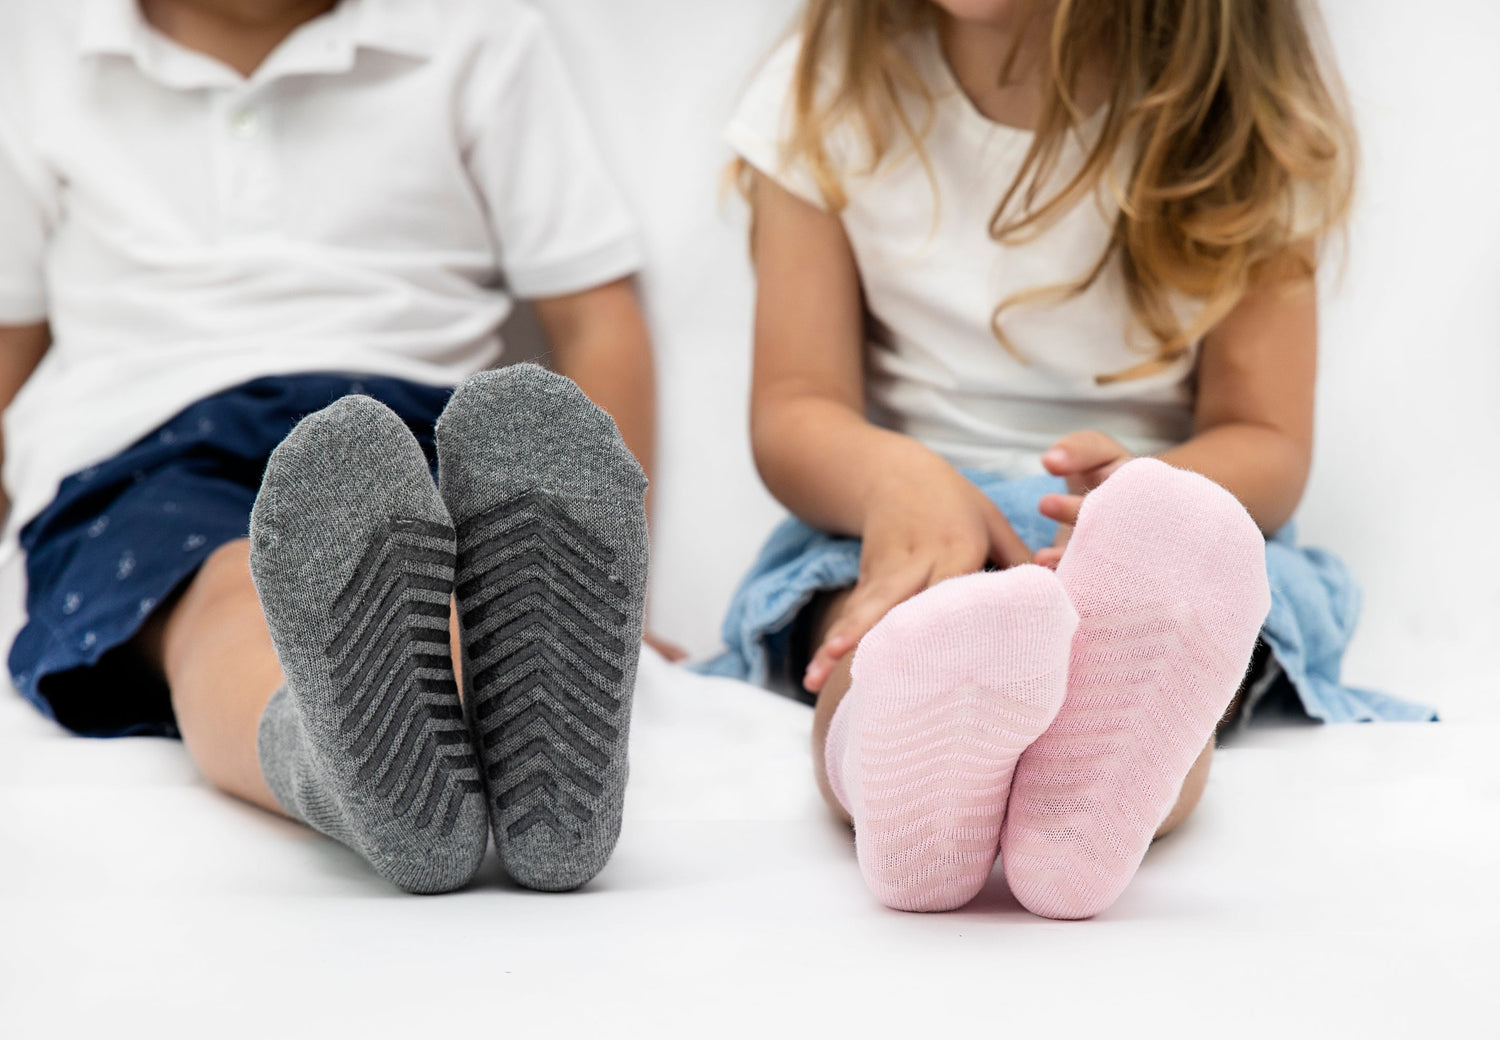 Kid's Blue Multi Anti-Slip Socks (4 pairs)